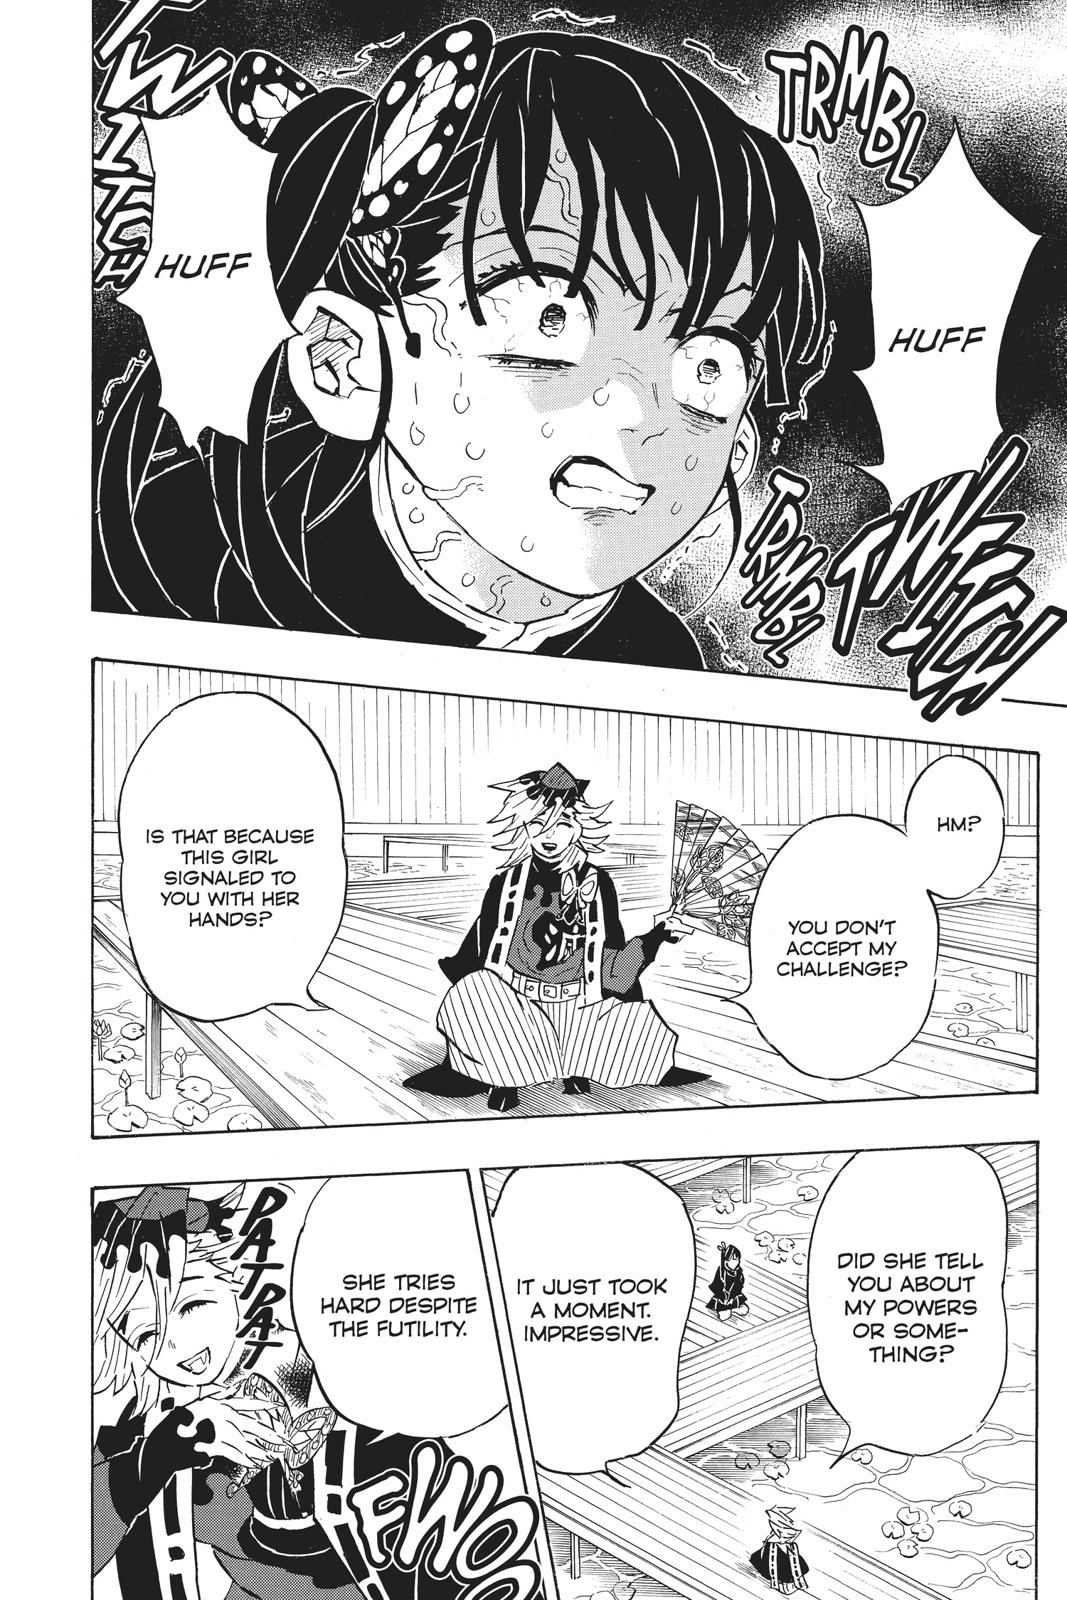 Demon Slayer Manga Manga Chapter - 143 - image 19